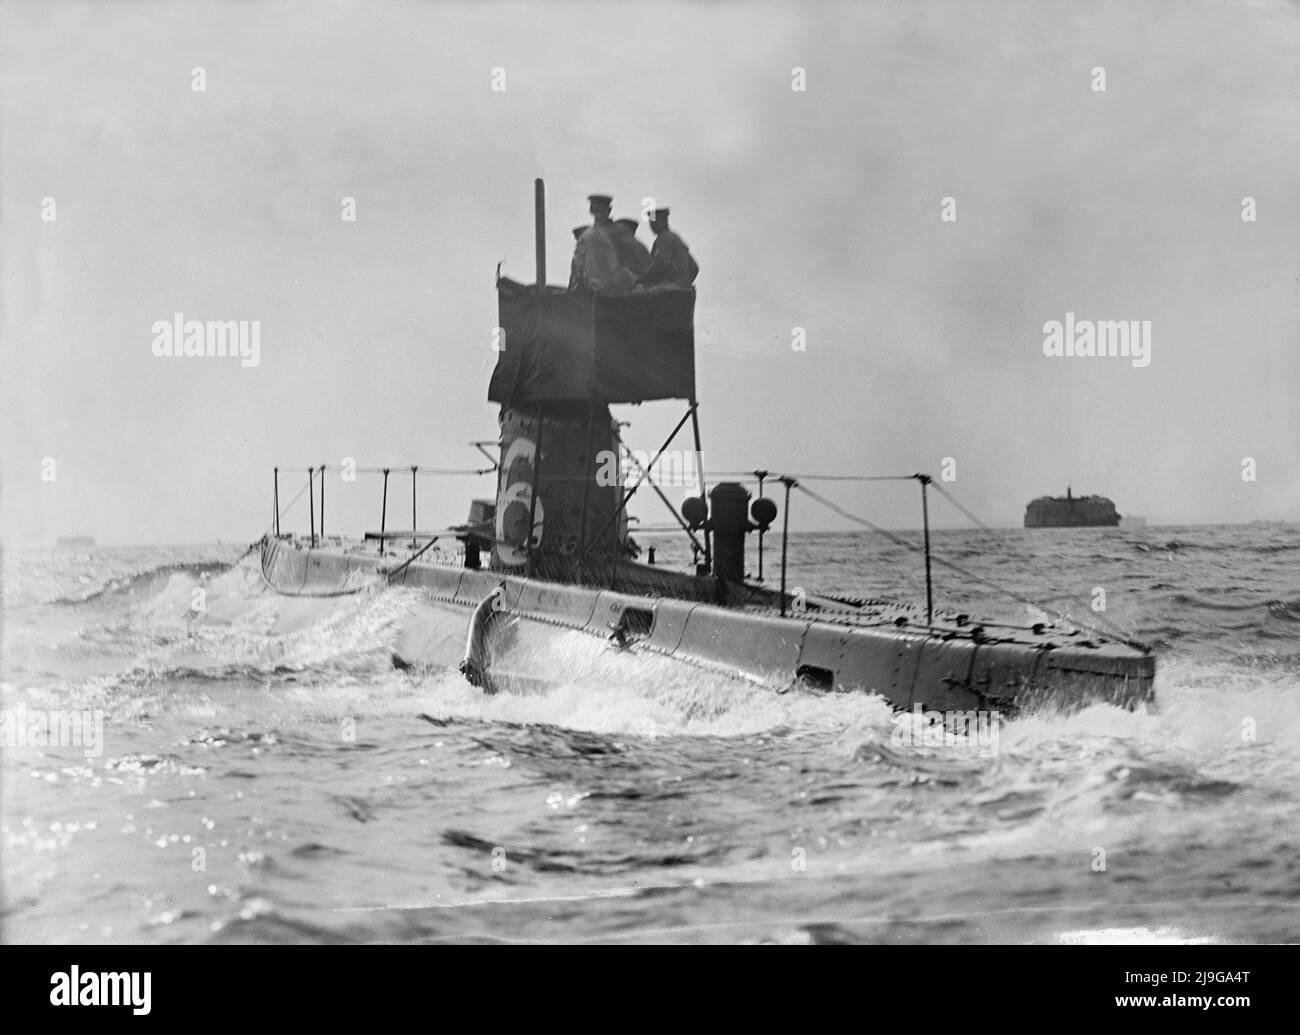 Une photo vintage vers 1914 du sous-marin de la Marine royale HMS B6 qui navigue à la surface du Solent. Lancée le 30 novembre 1905, elle a servi pendant la première Guerre mondiale, basée à Gibraltar, puis déployée en Méditerranée orientale pour servir pendant la campagne Gallipoli. Elle a finalement été mise au rebut en 1921 Banque D'Images